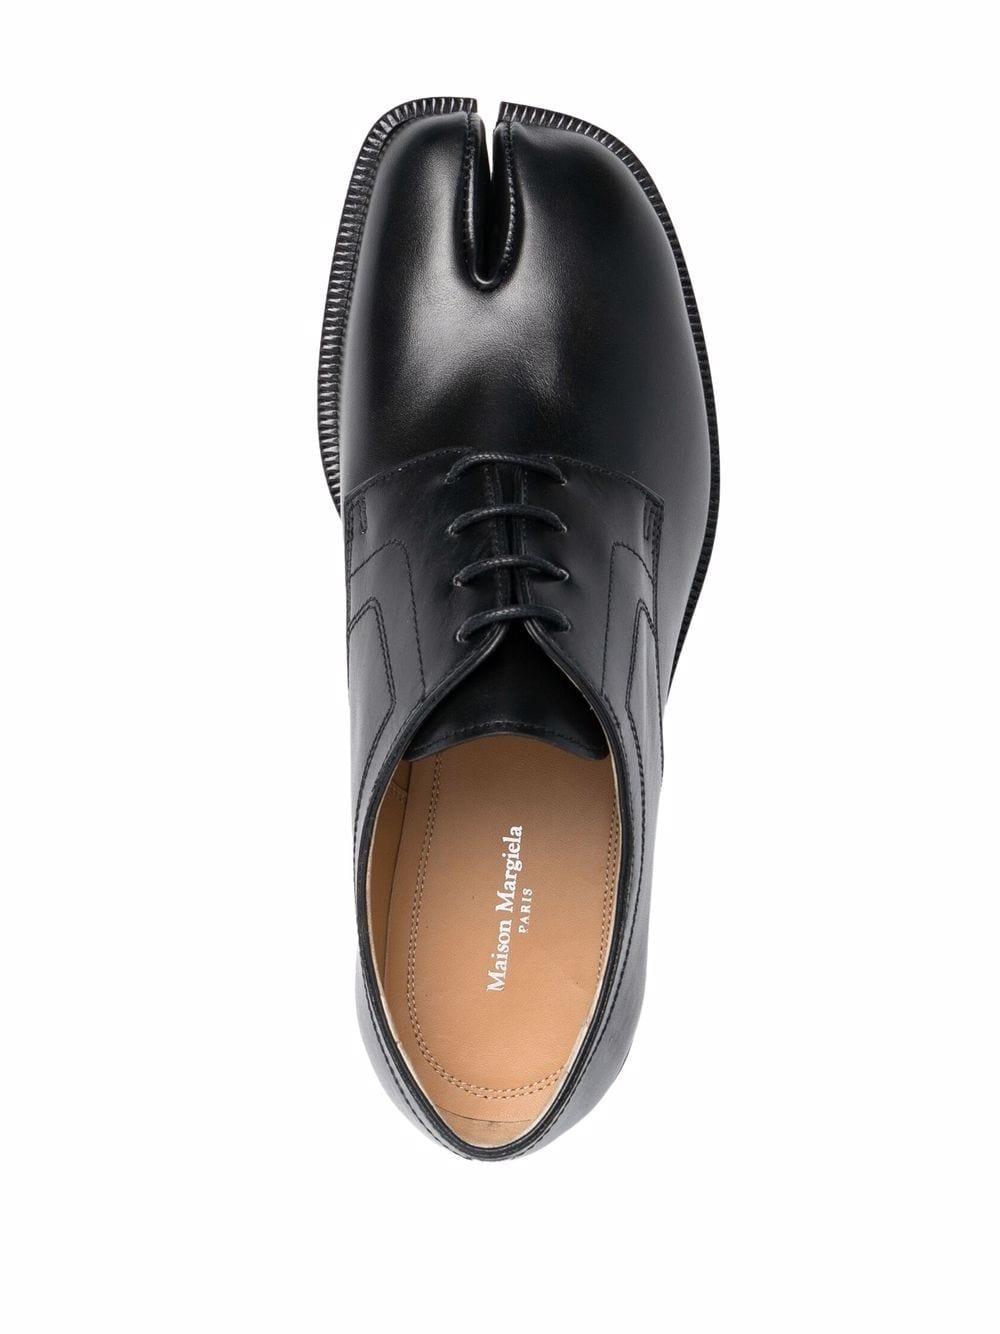 經典黑色皮革分趾綁帶女式鞋 FW23系列